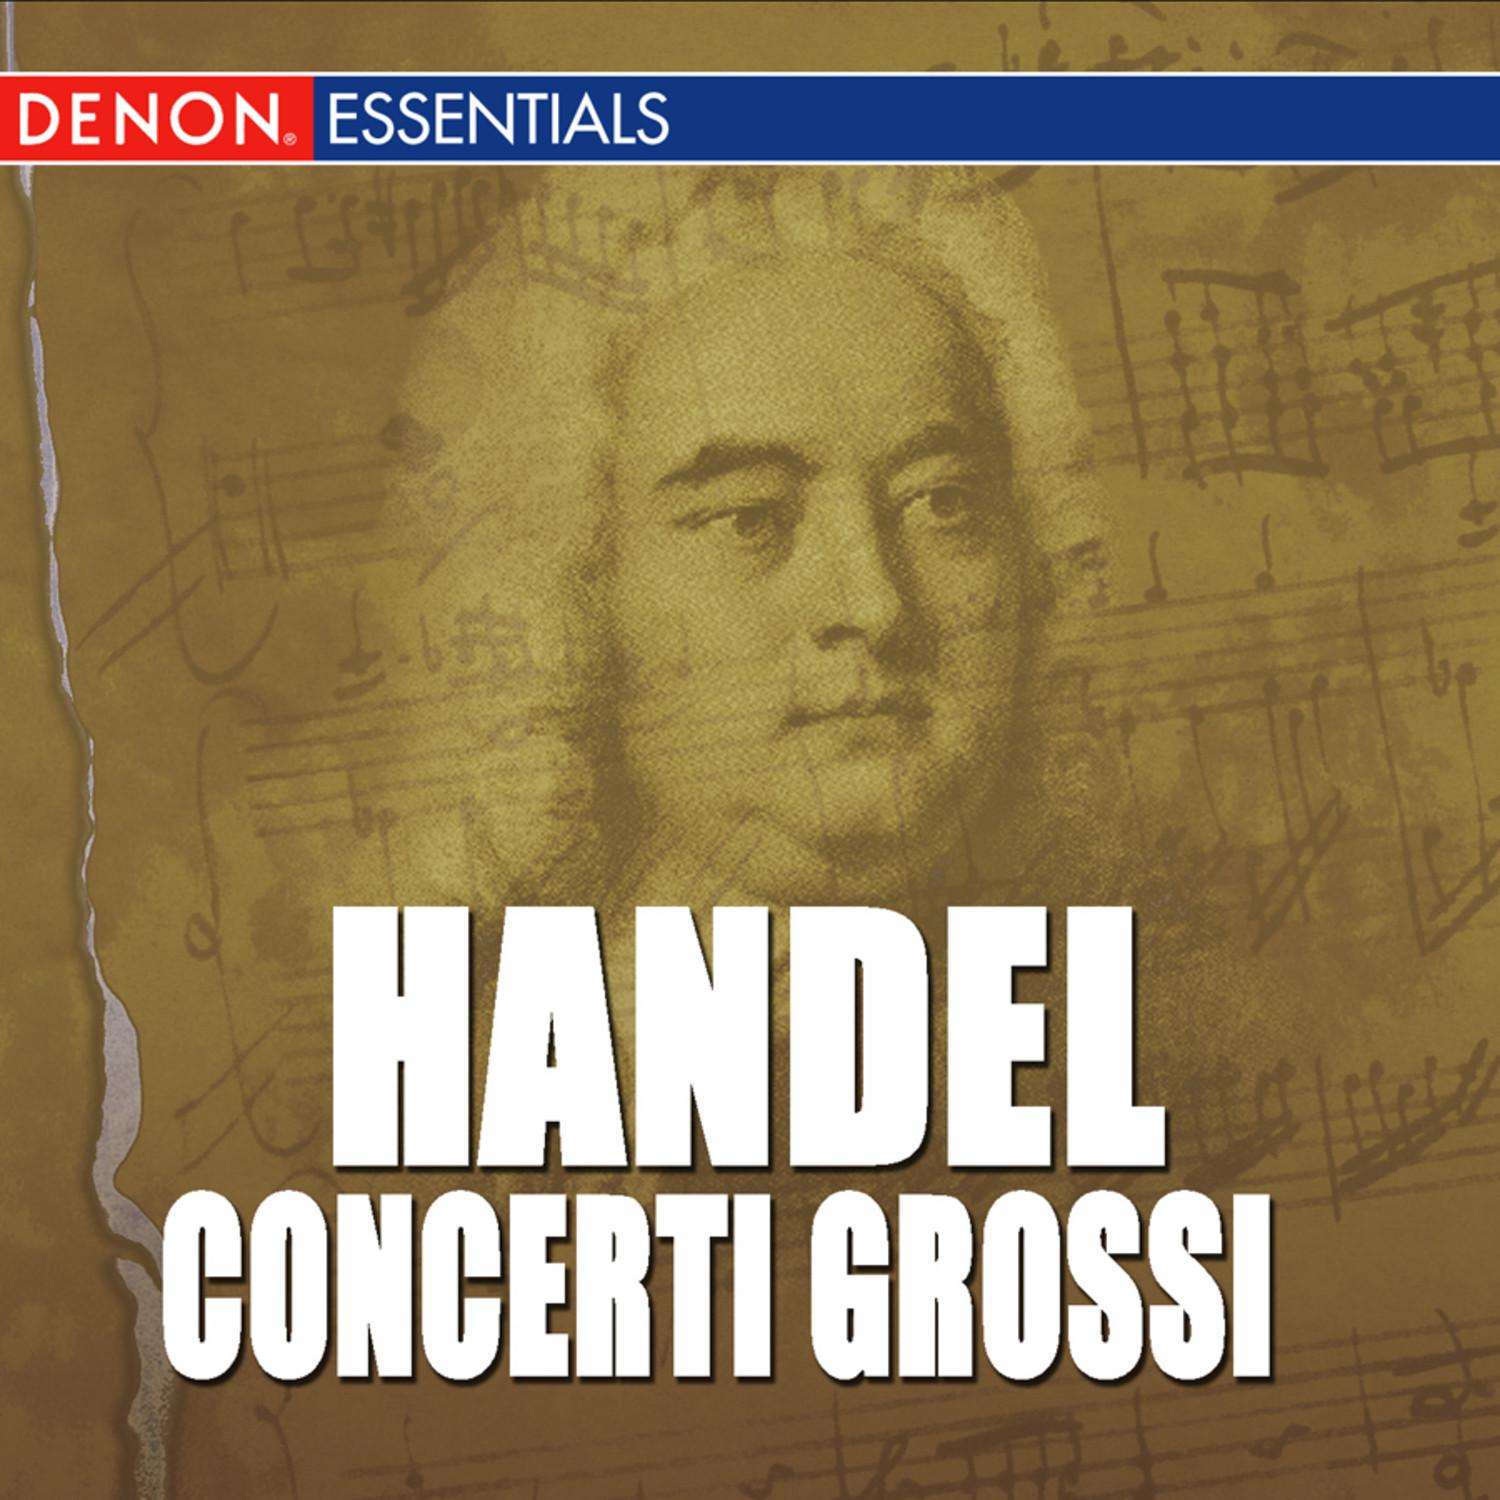 Concerto Grosso, Op. 6: No. 5 in D Major, HWV 323: III. Presto